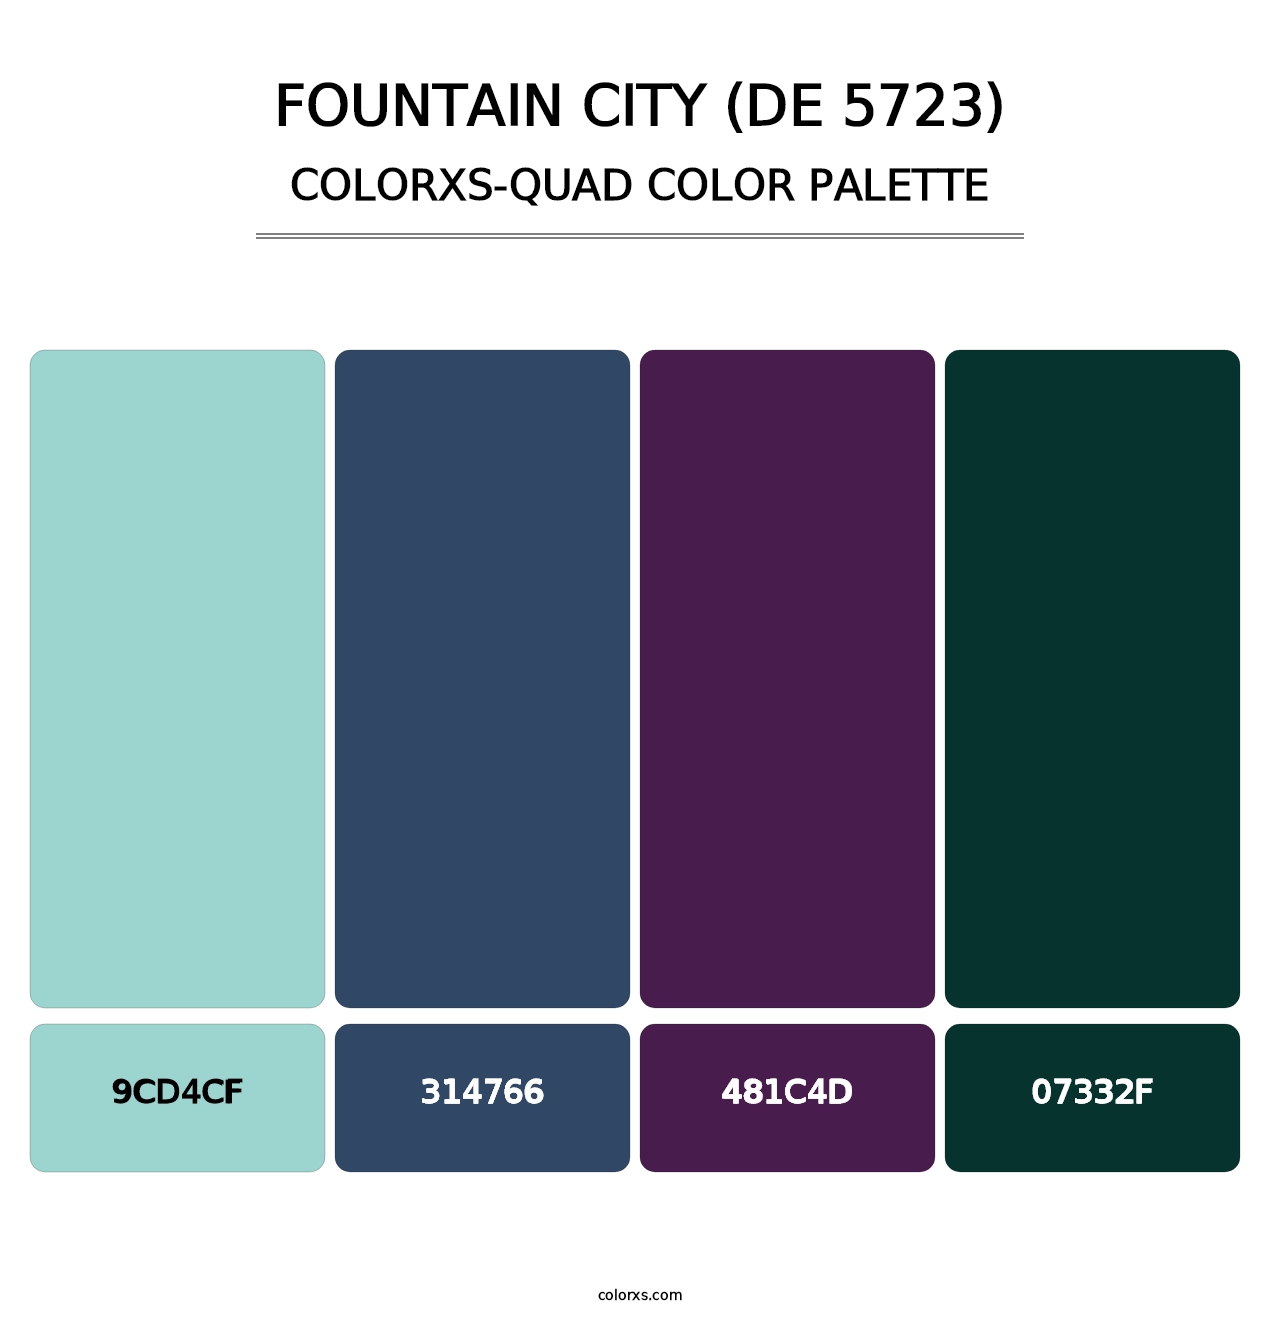 Fountain City (DE 5723) - Colorxs Quad Palette